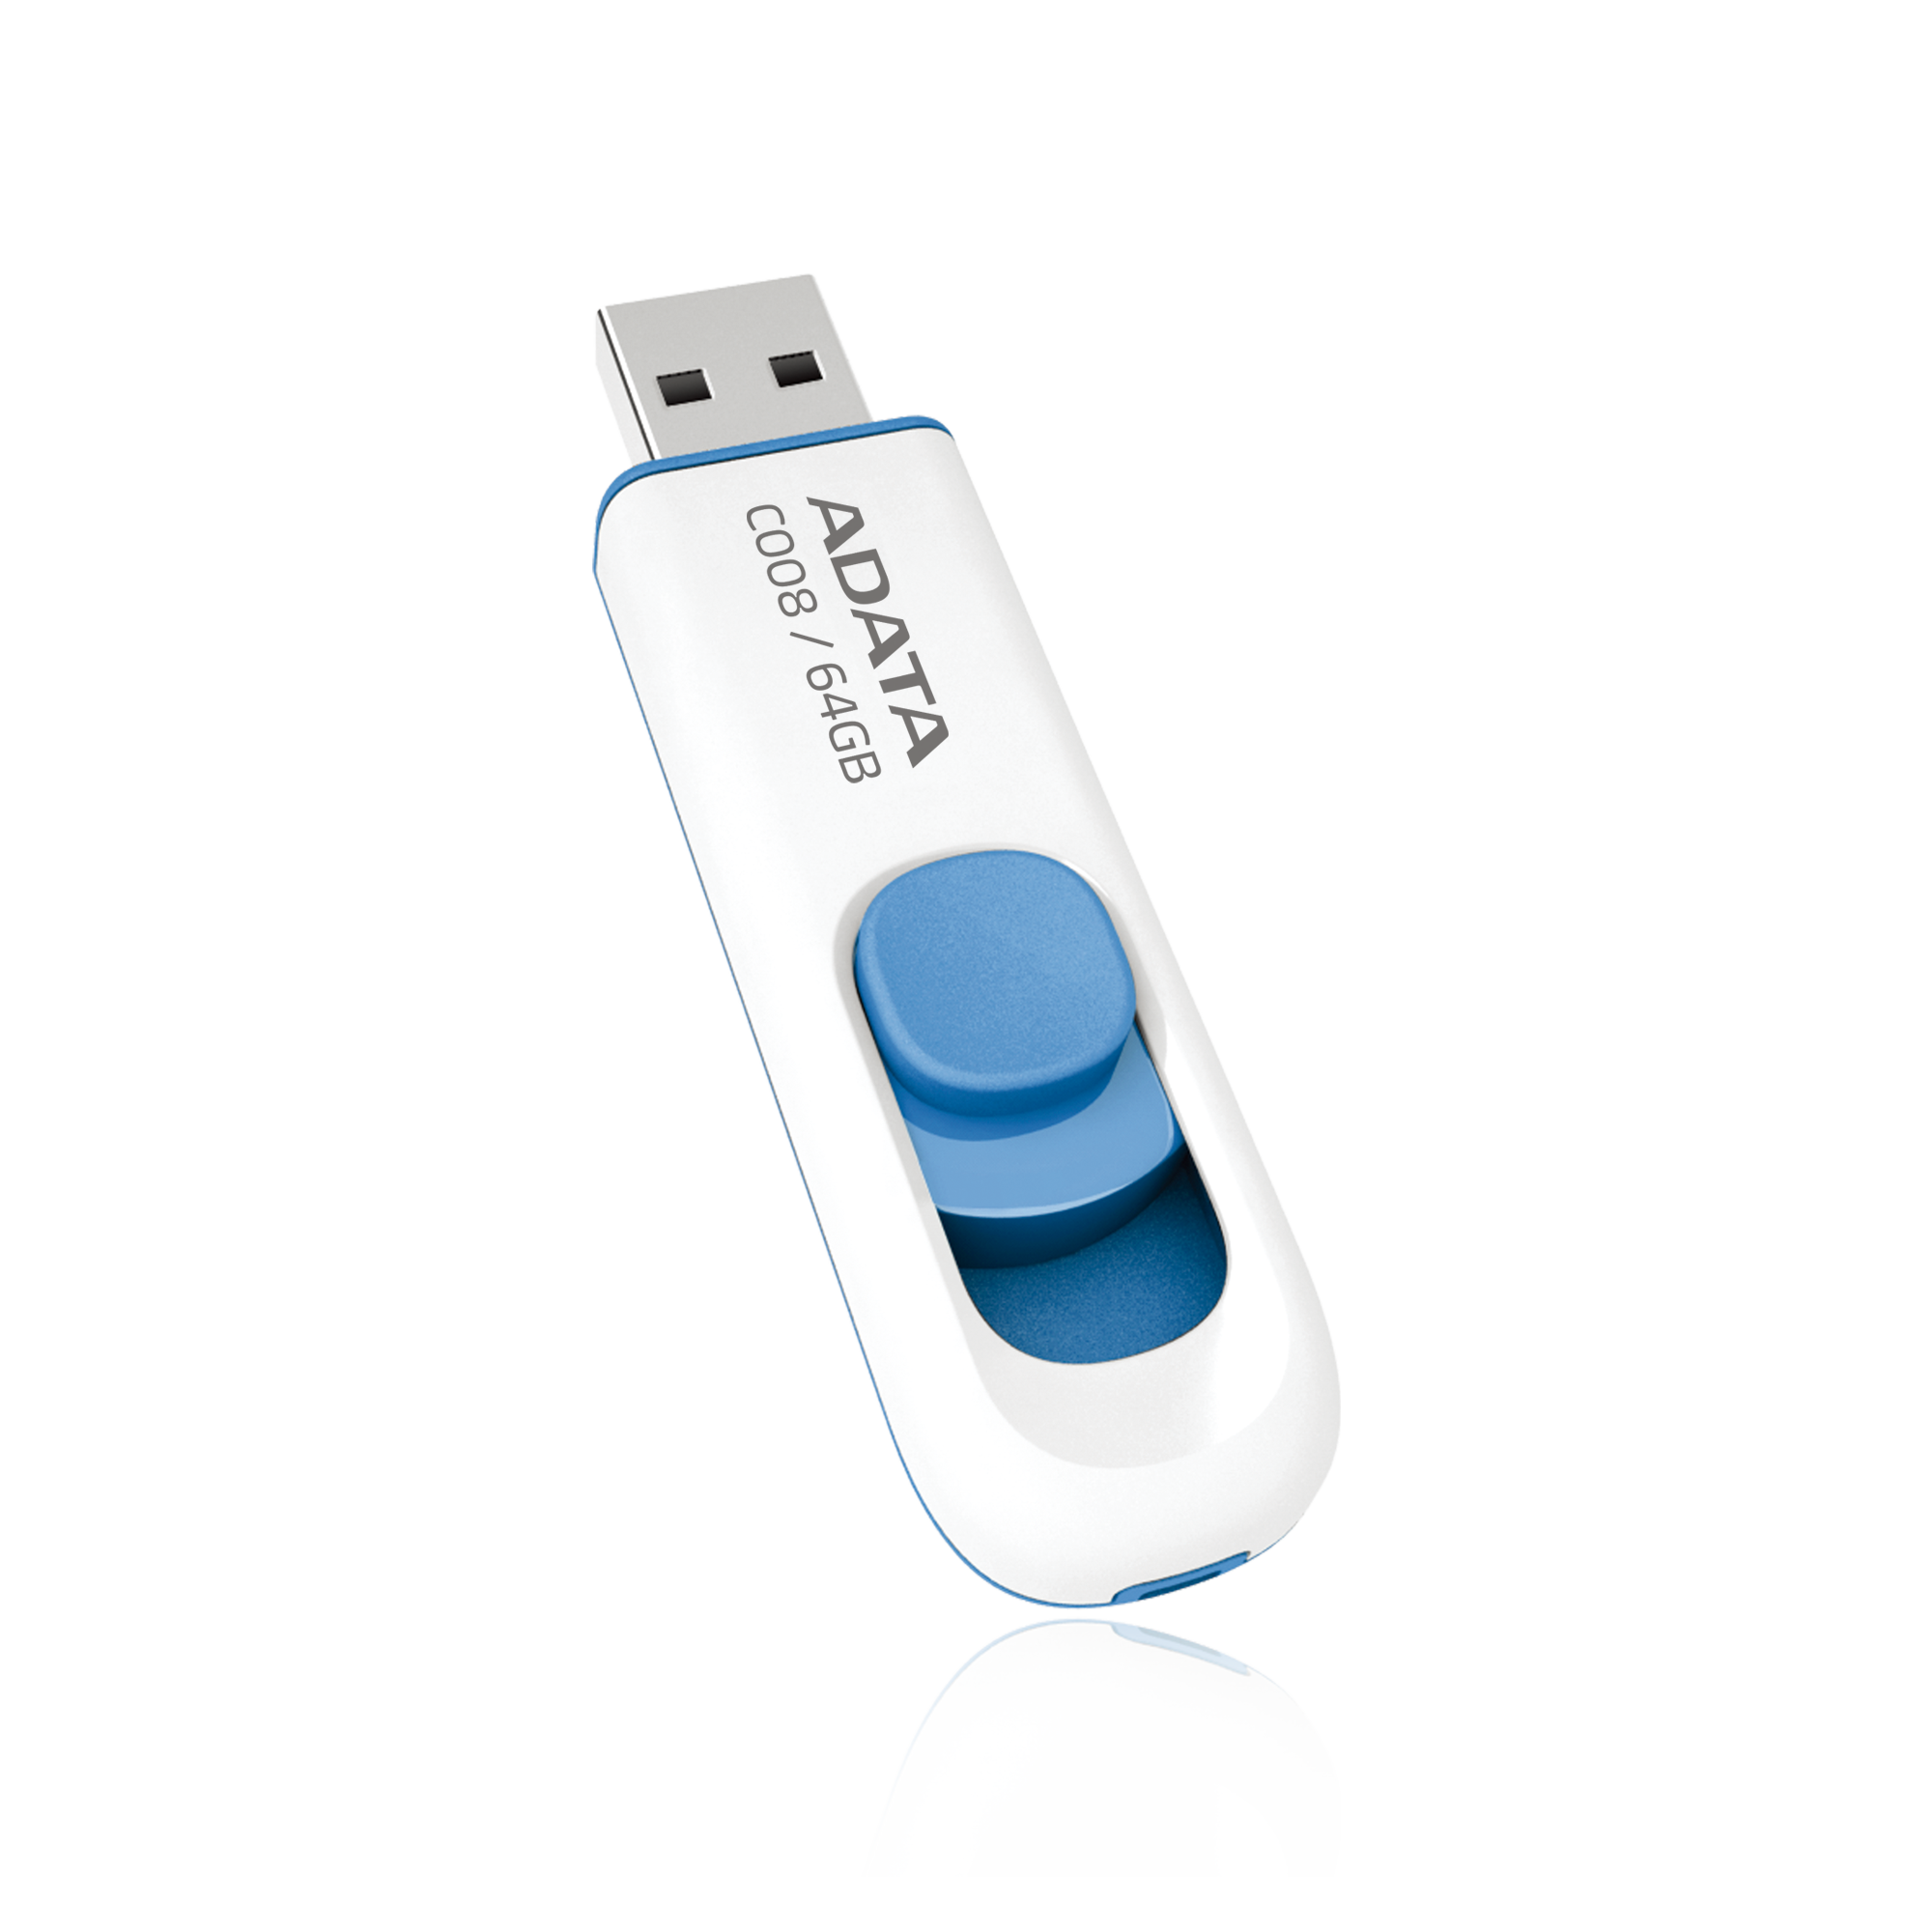 CLÉ USB ADATA C008 16GO USB 2.0 - WIKI High Tech Provider